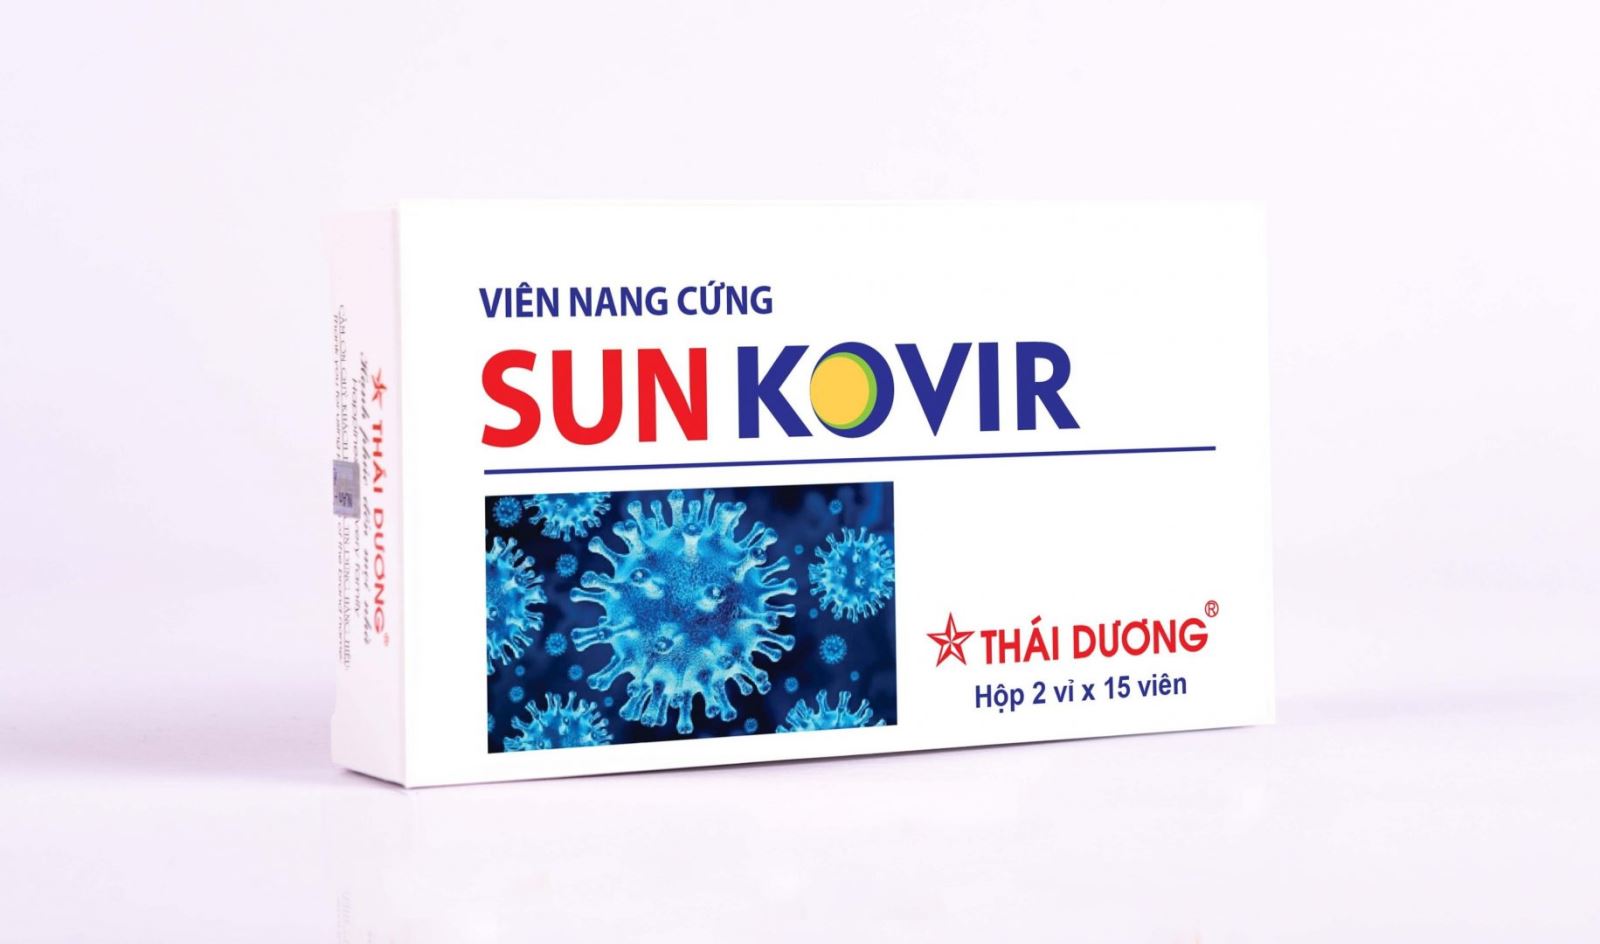 SUNKOVIR- Công trình nghiên cứu thuốc điều trị cúm mùa, covid-19 đạt giải nhì Hội thi Sáng tạo kỹ thuật Hà Nội lần thứ nhất